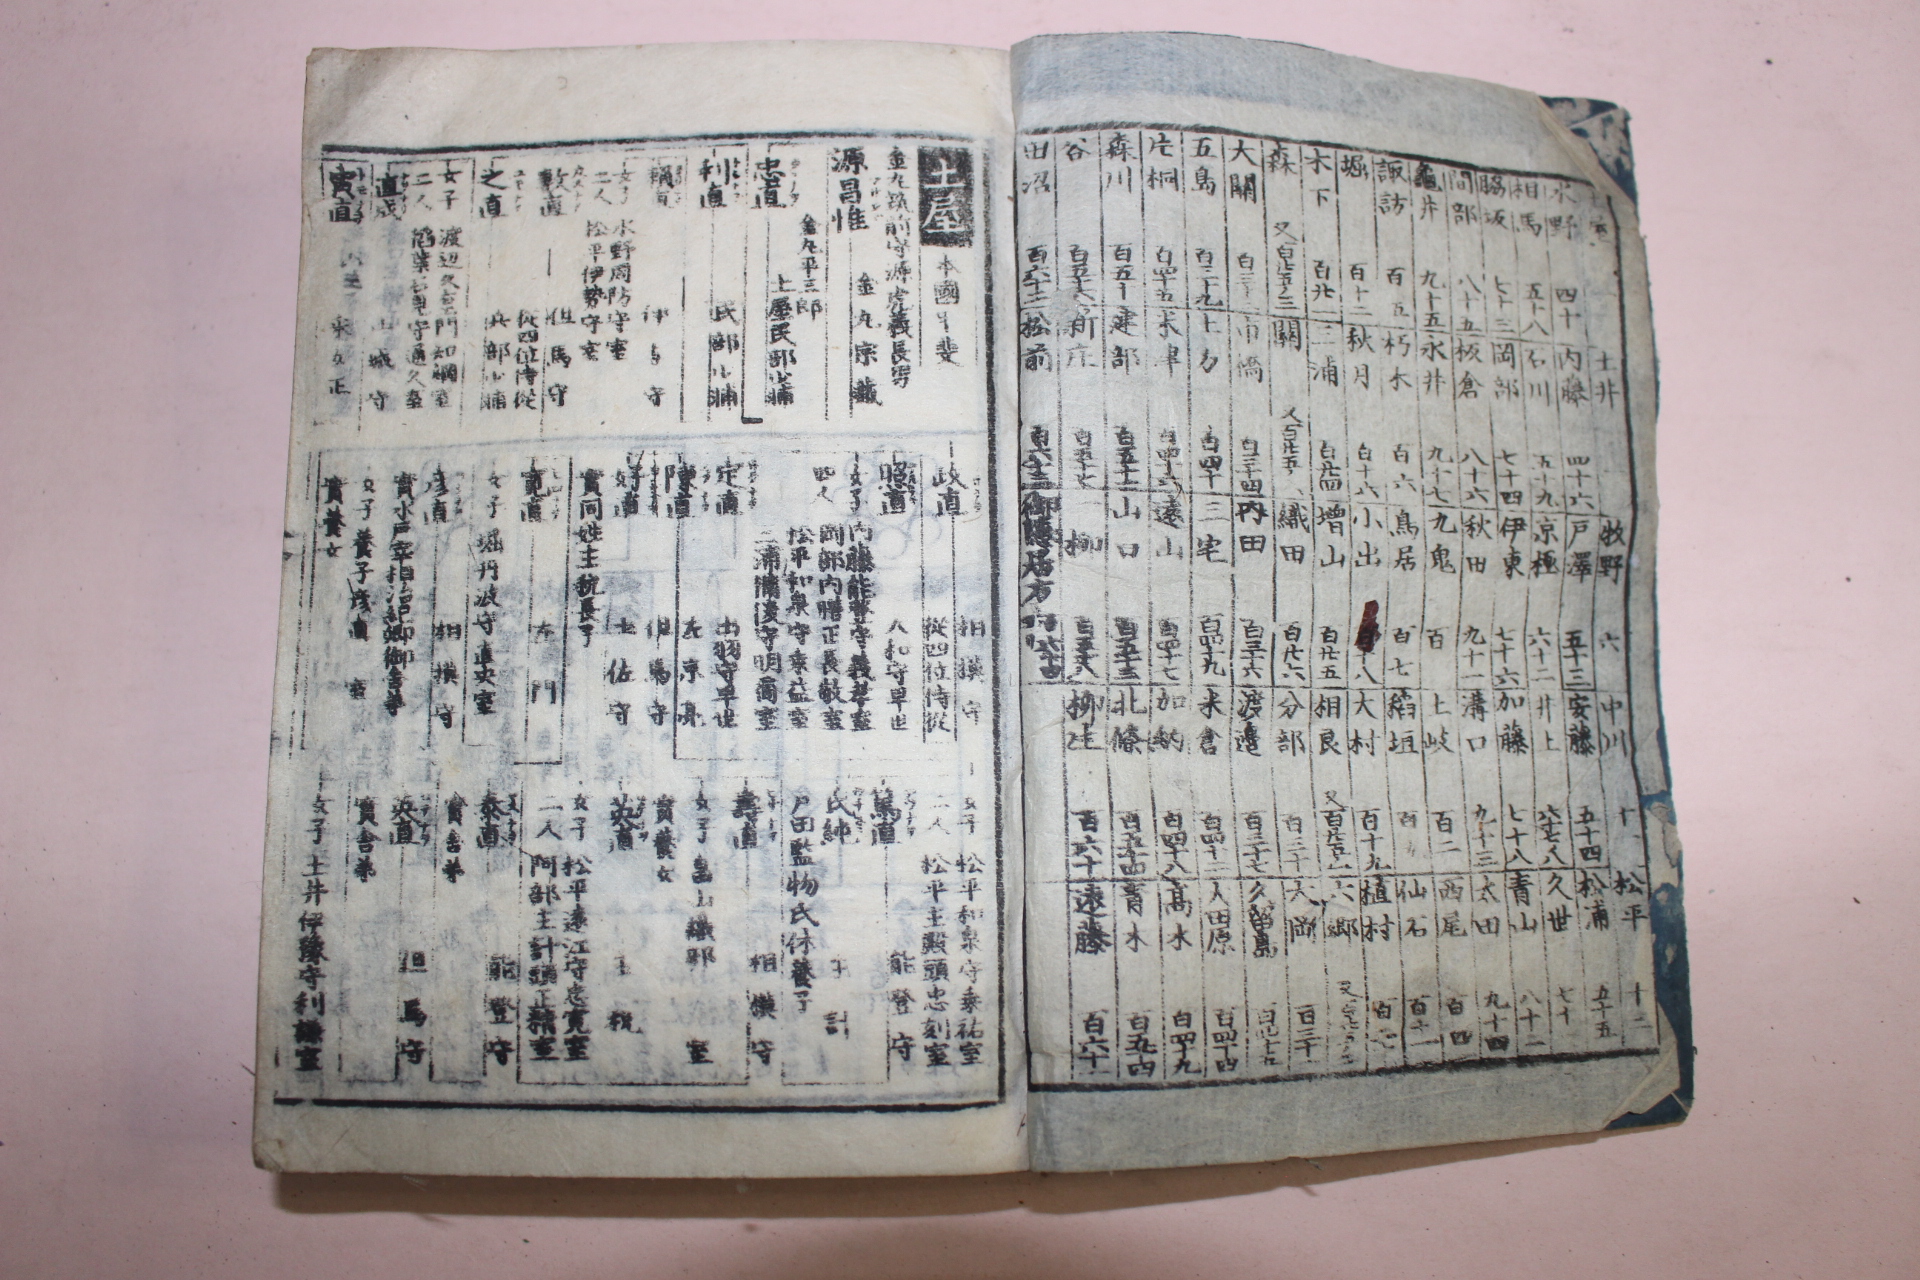 에도시기 일본목판본 강호시기의 문중마크와 무기류가 수록된 책